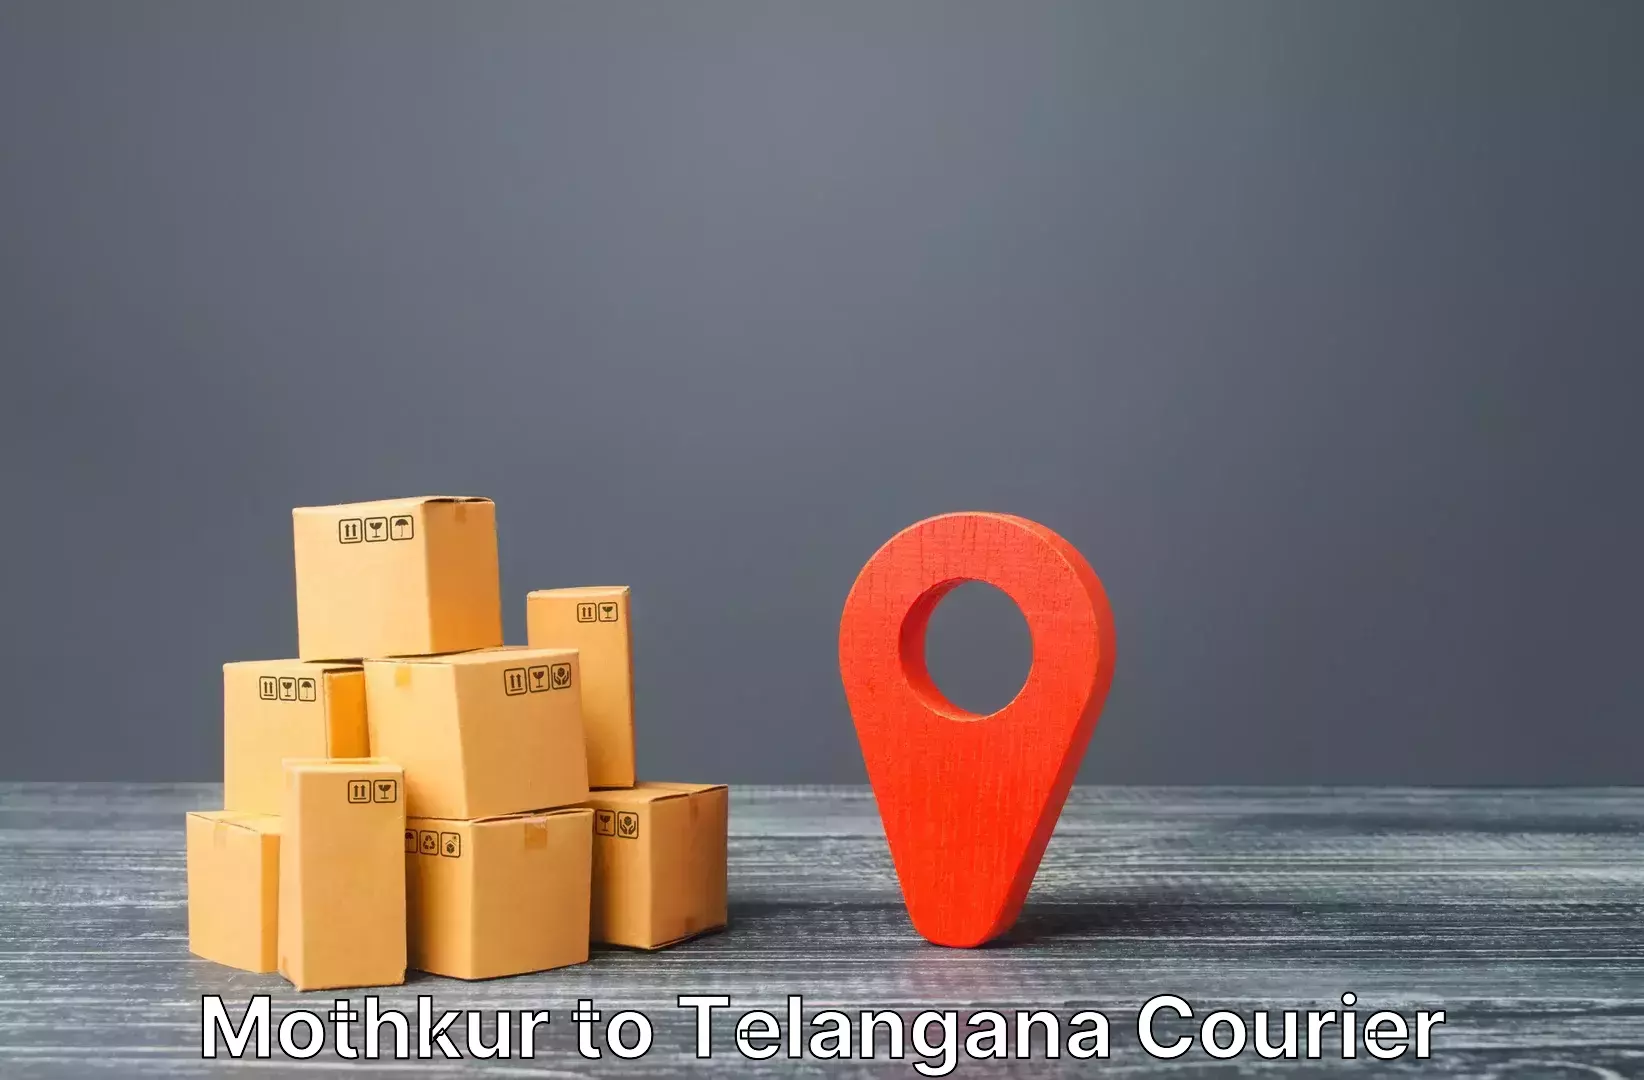 Luggage shipping rates Mothkur to Gangadhara